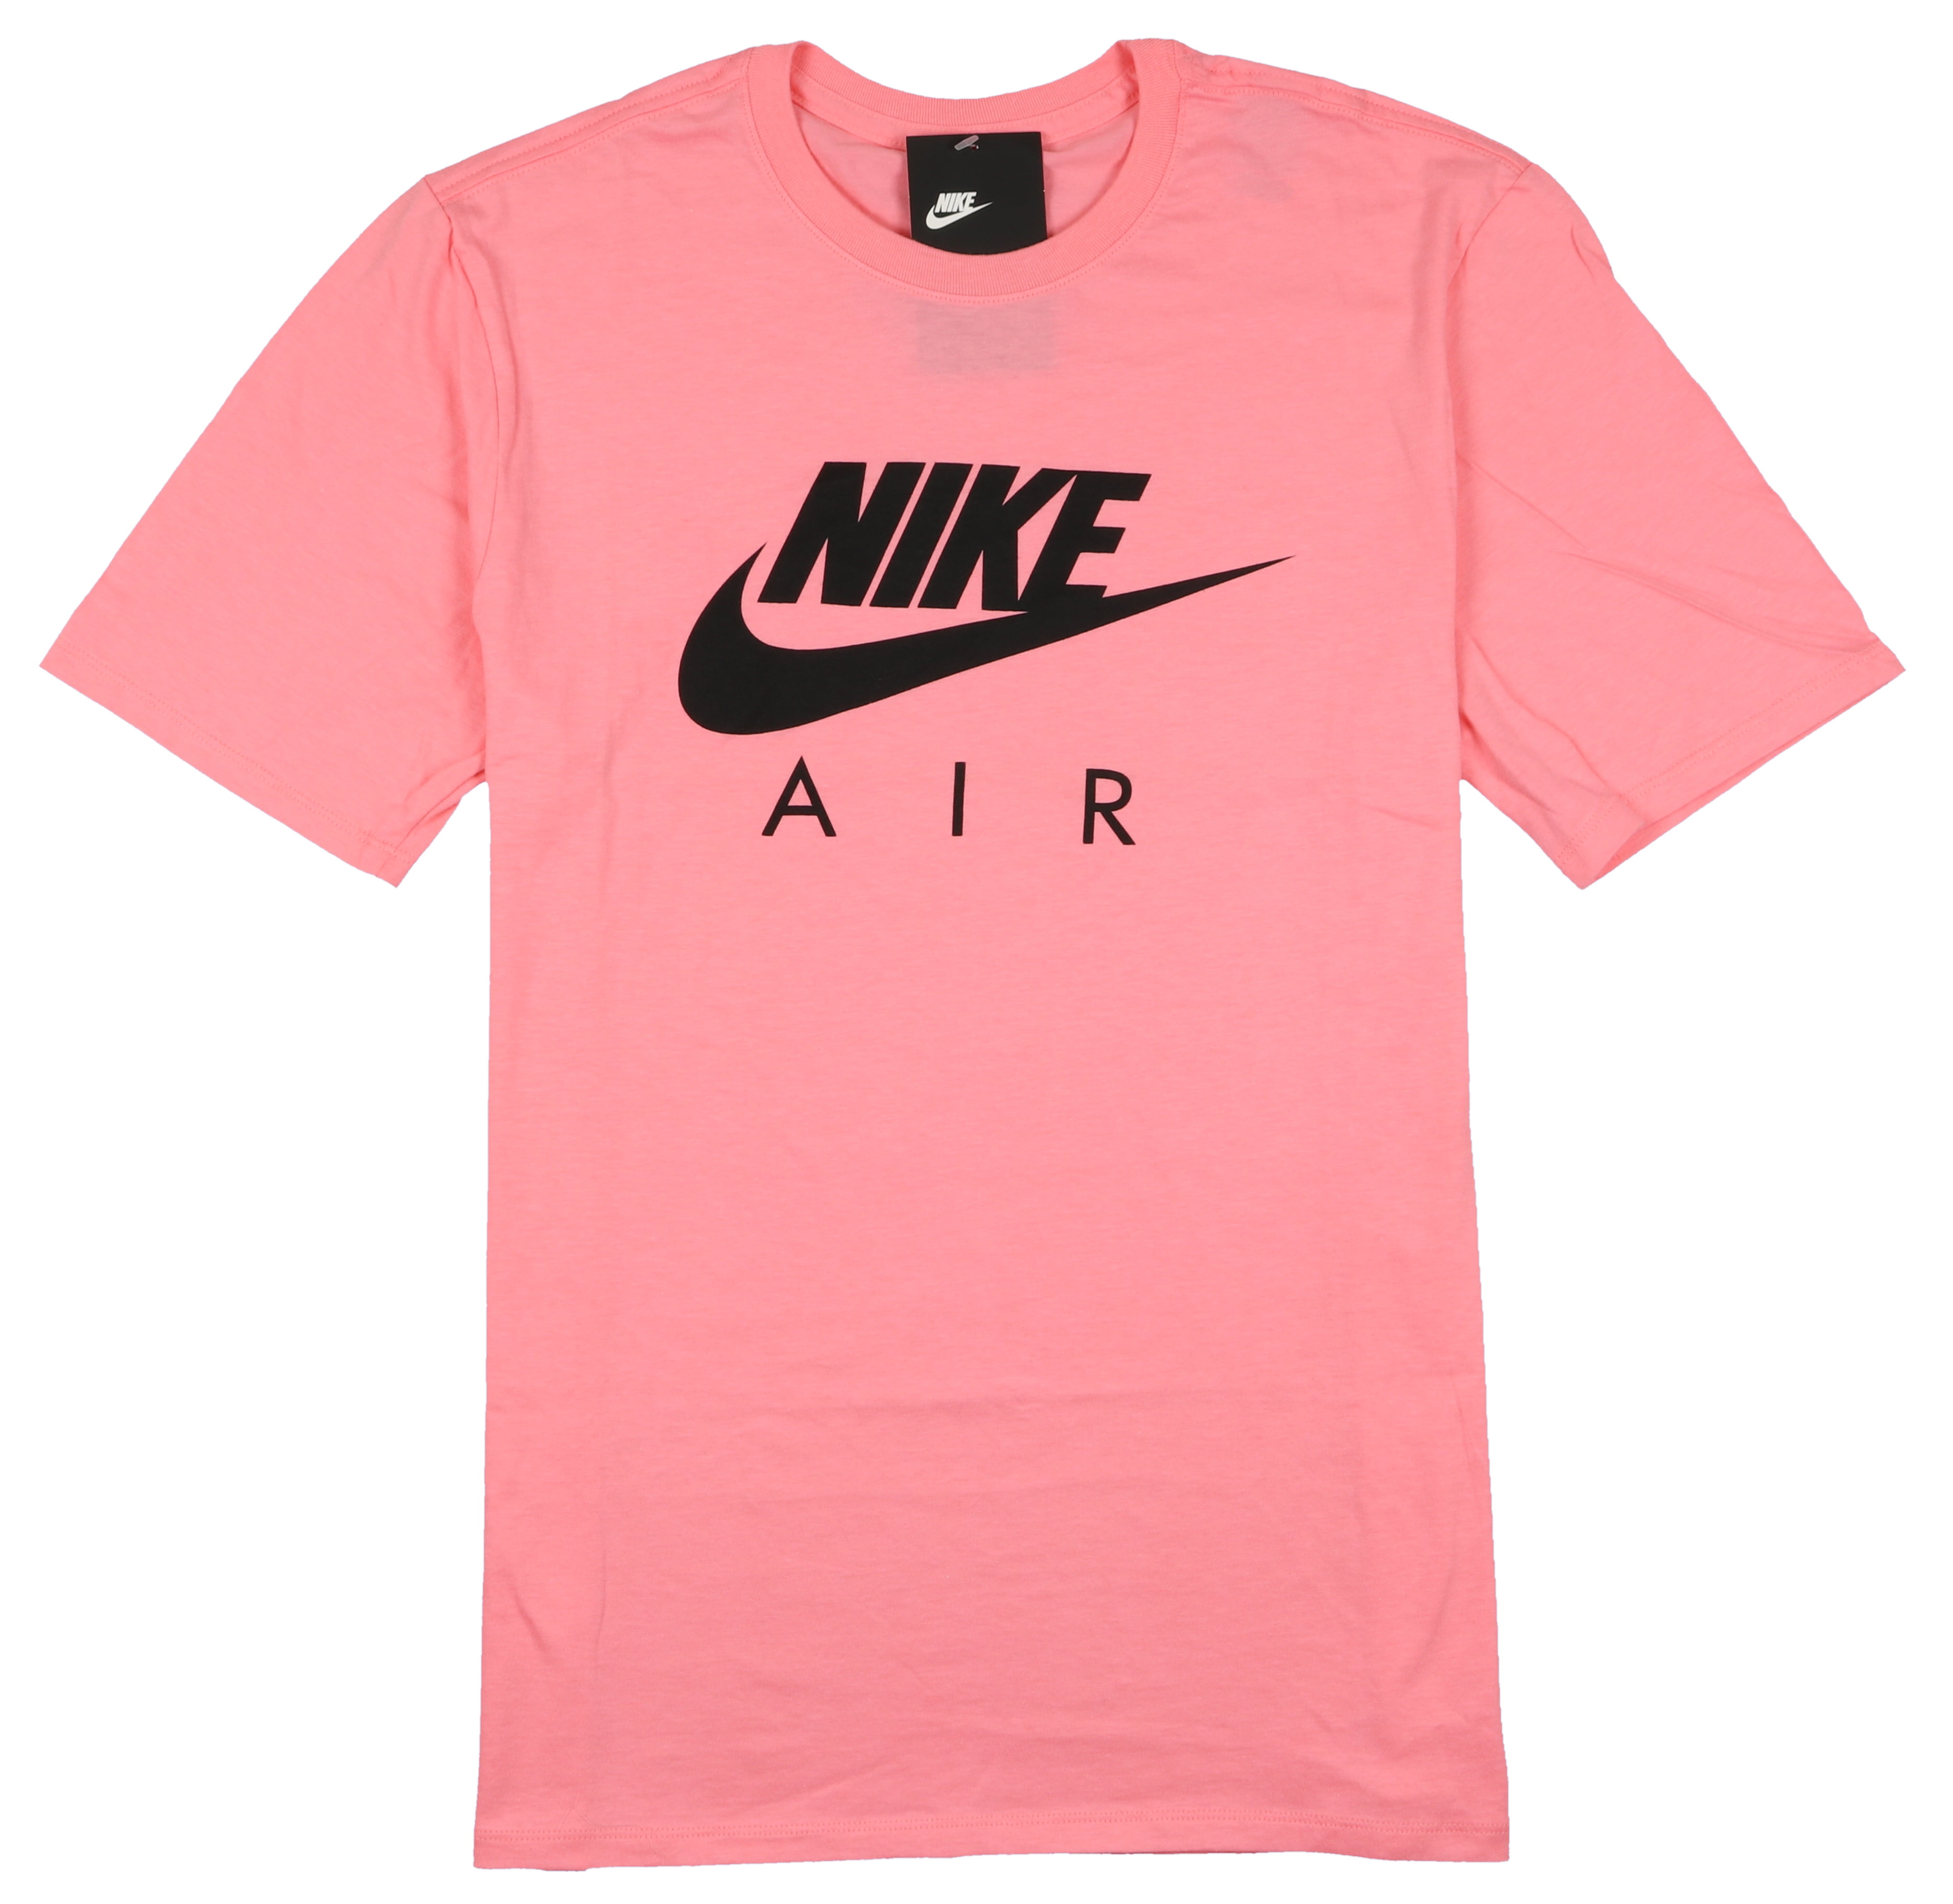 Buy > pink nike shirt mens > in stock